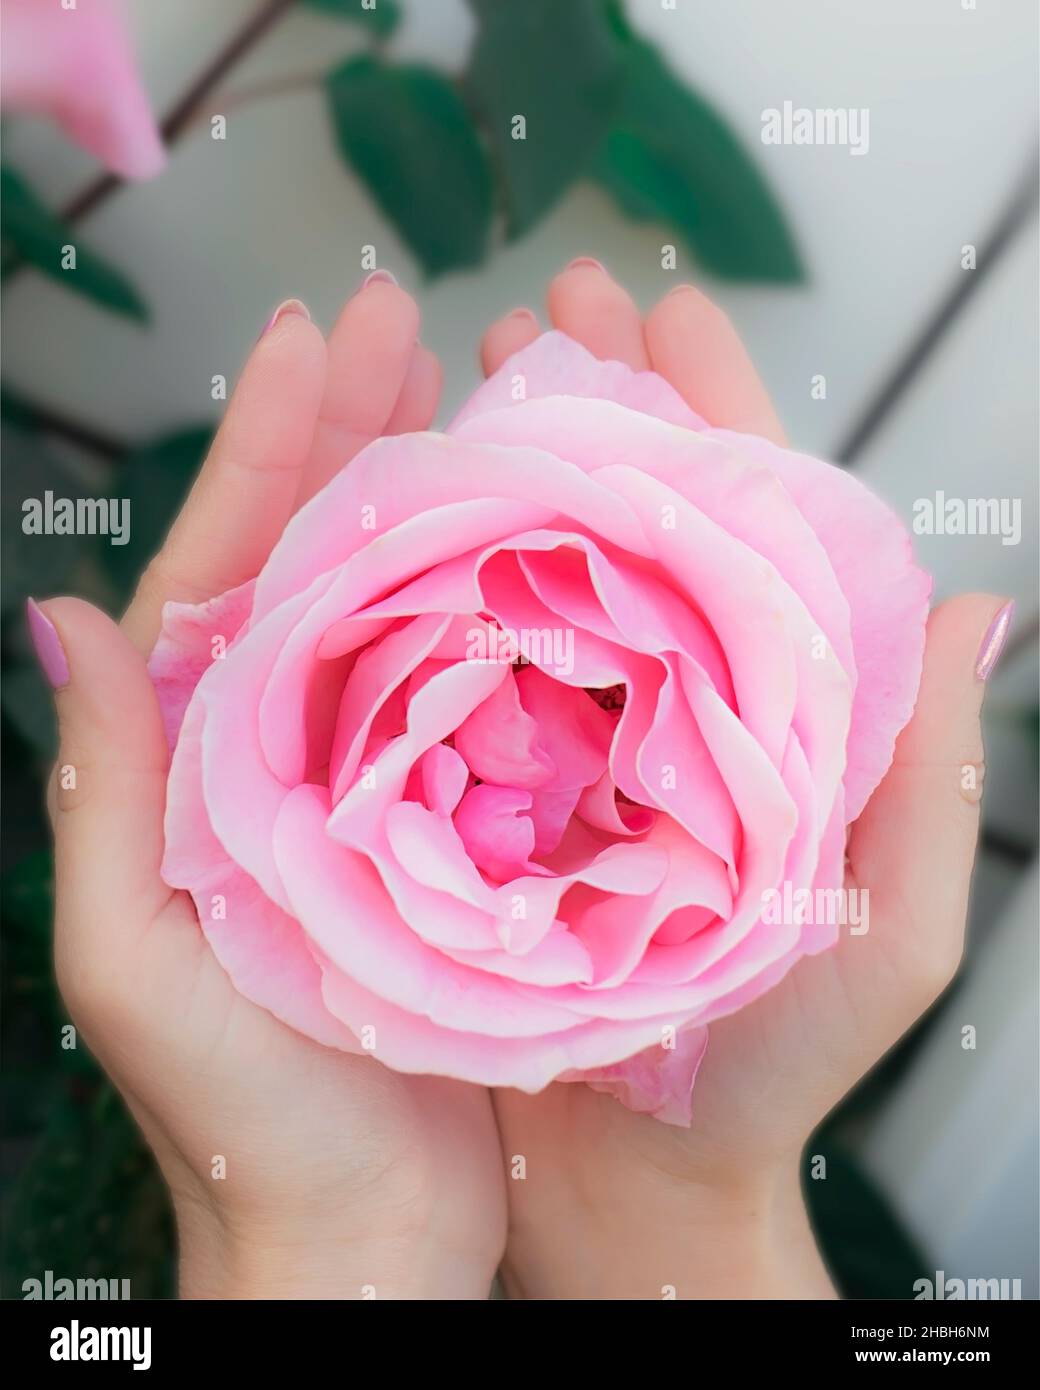 Frau betapst eine große rosa Rose in den Handflächen ihrer Hände aus der Perspektive der ersten Person Stockfoto